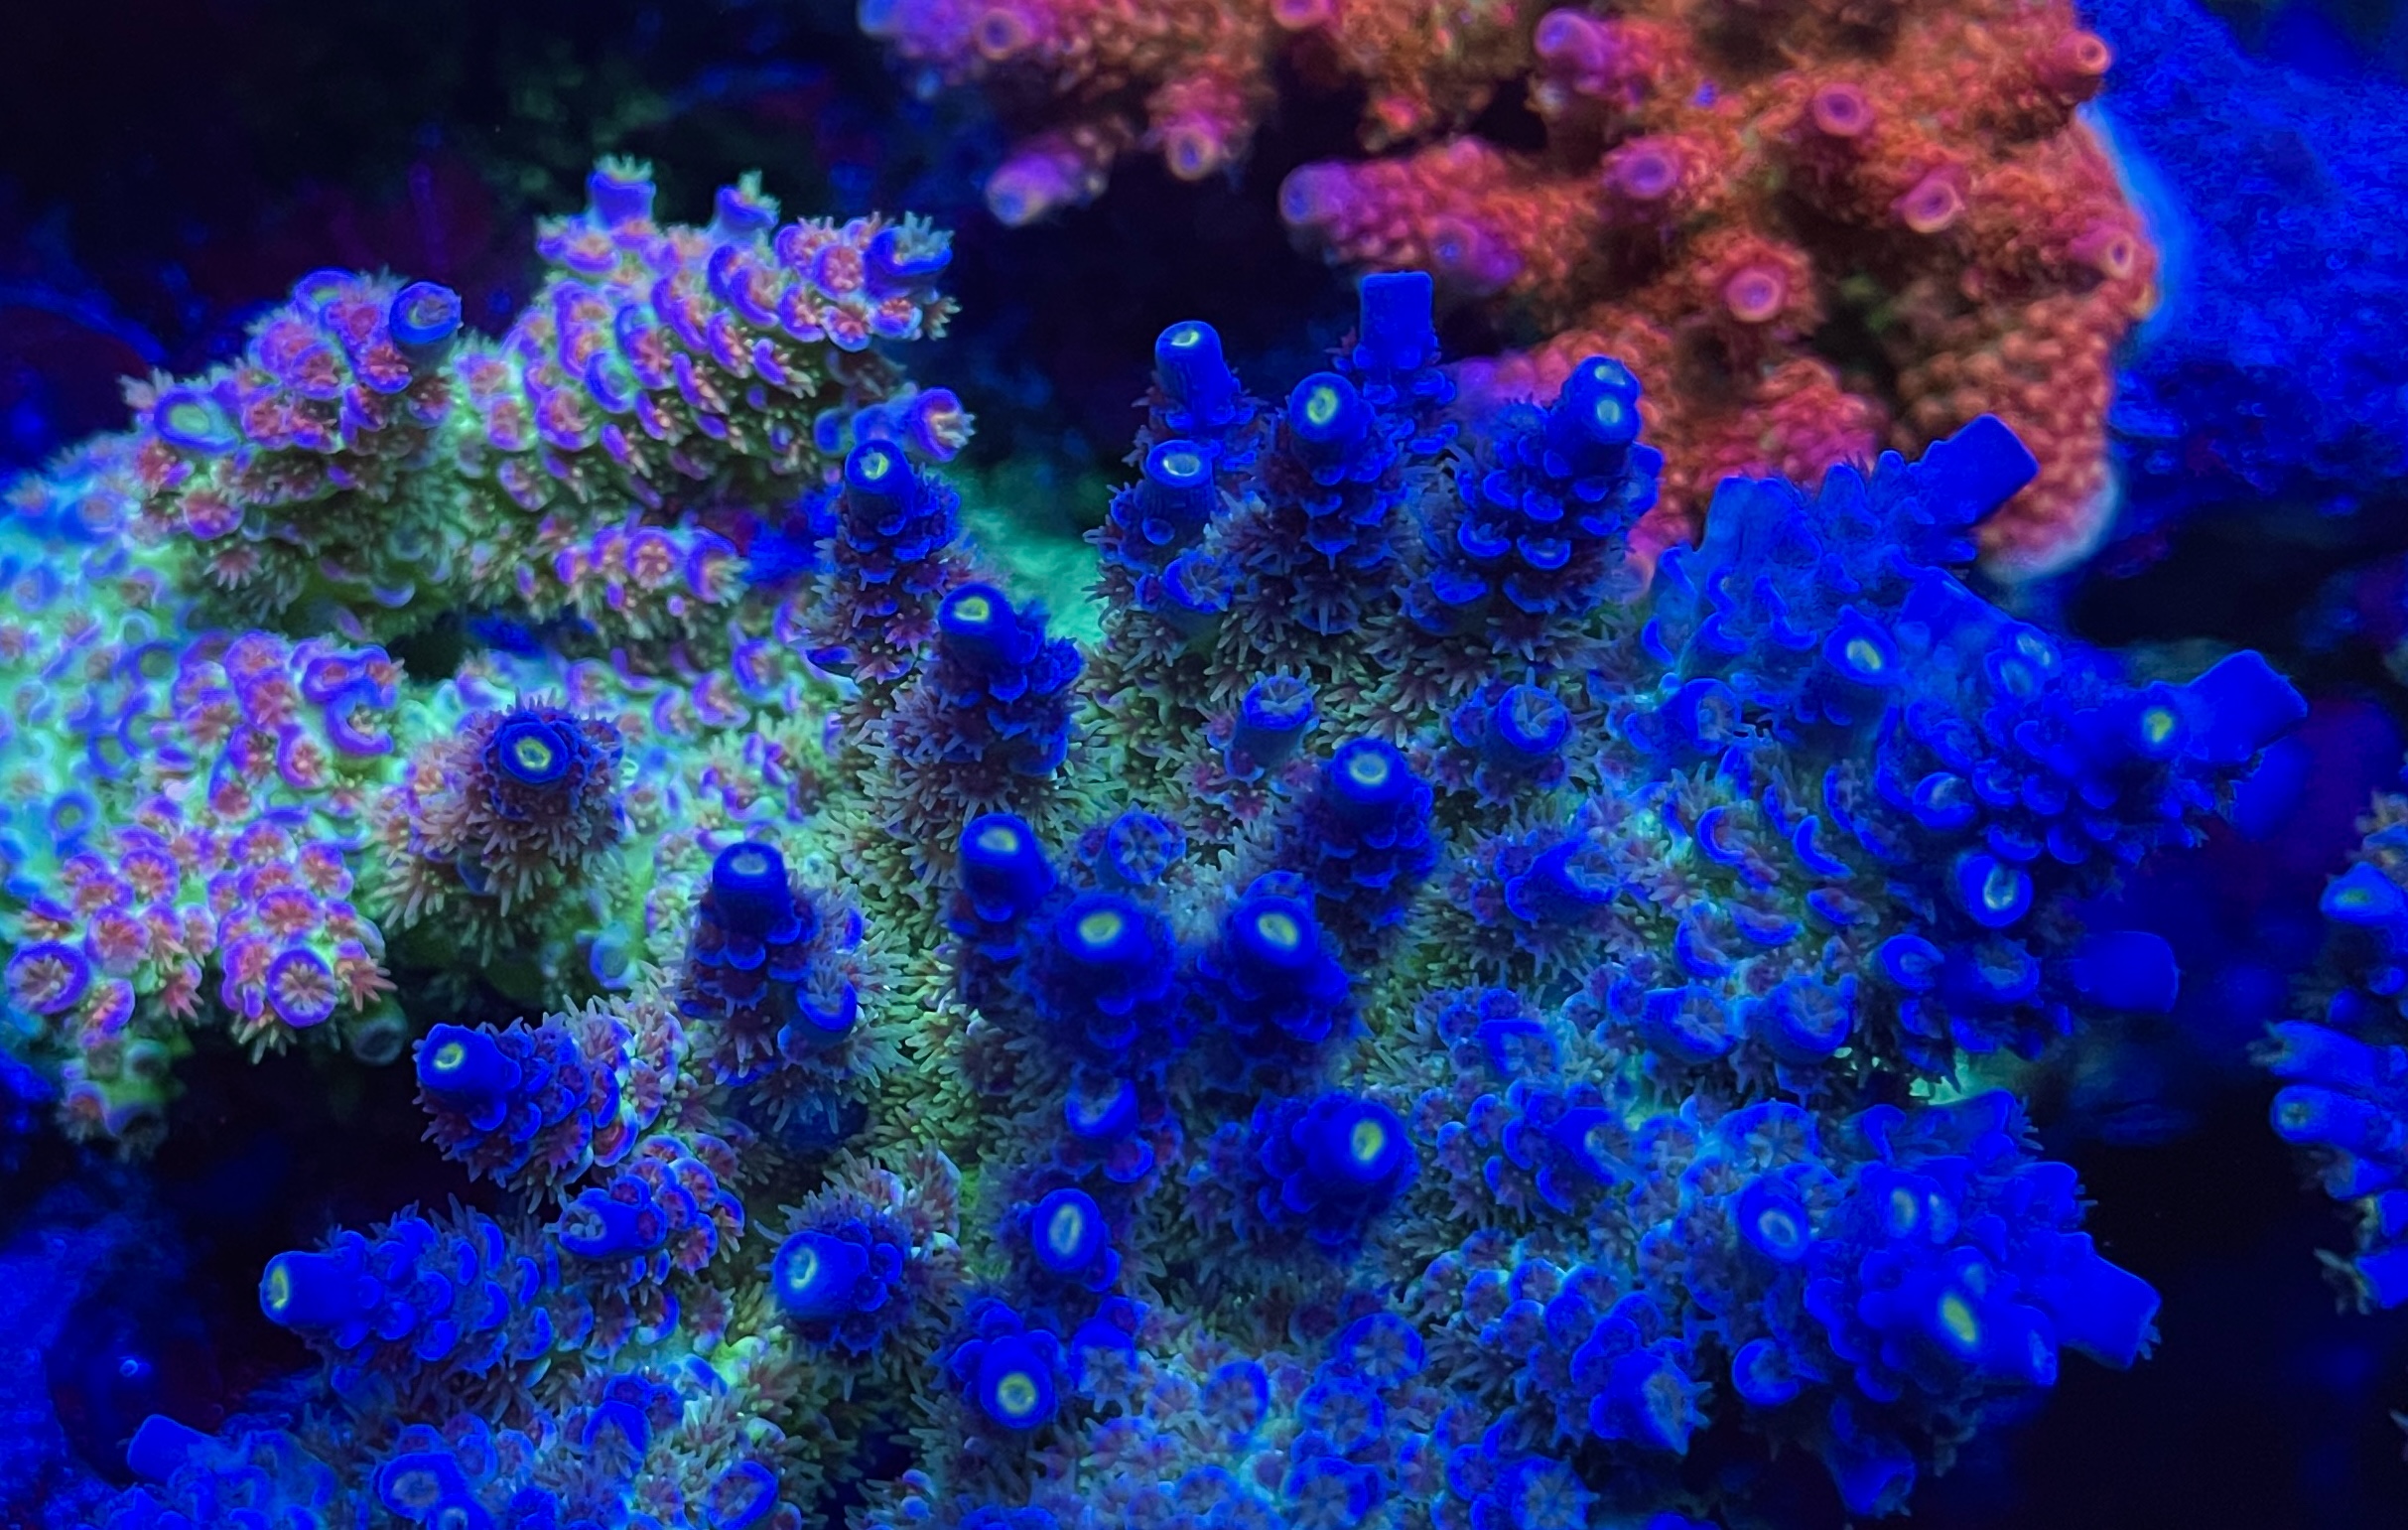 Hva trenger du for å få sterk korallpop-fluorescens?